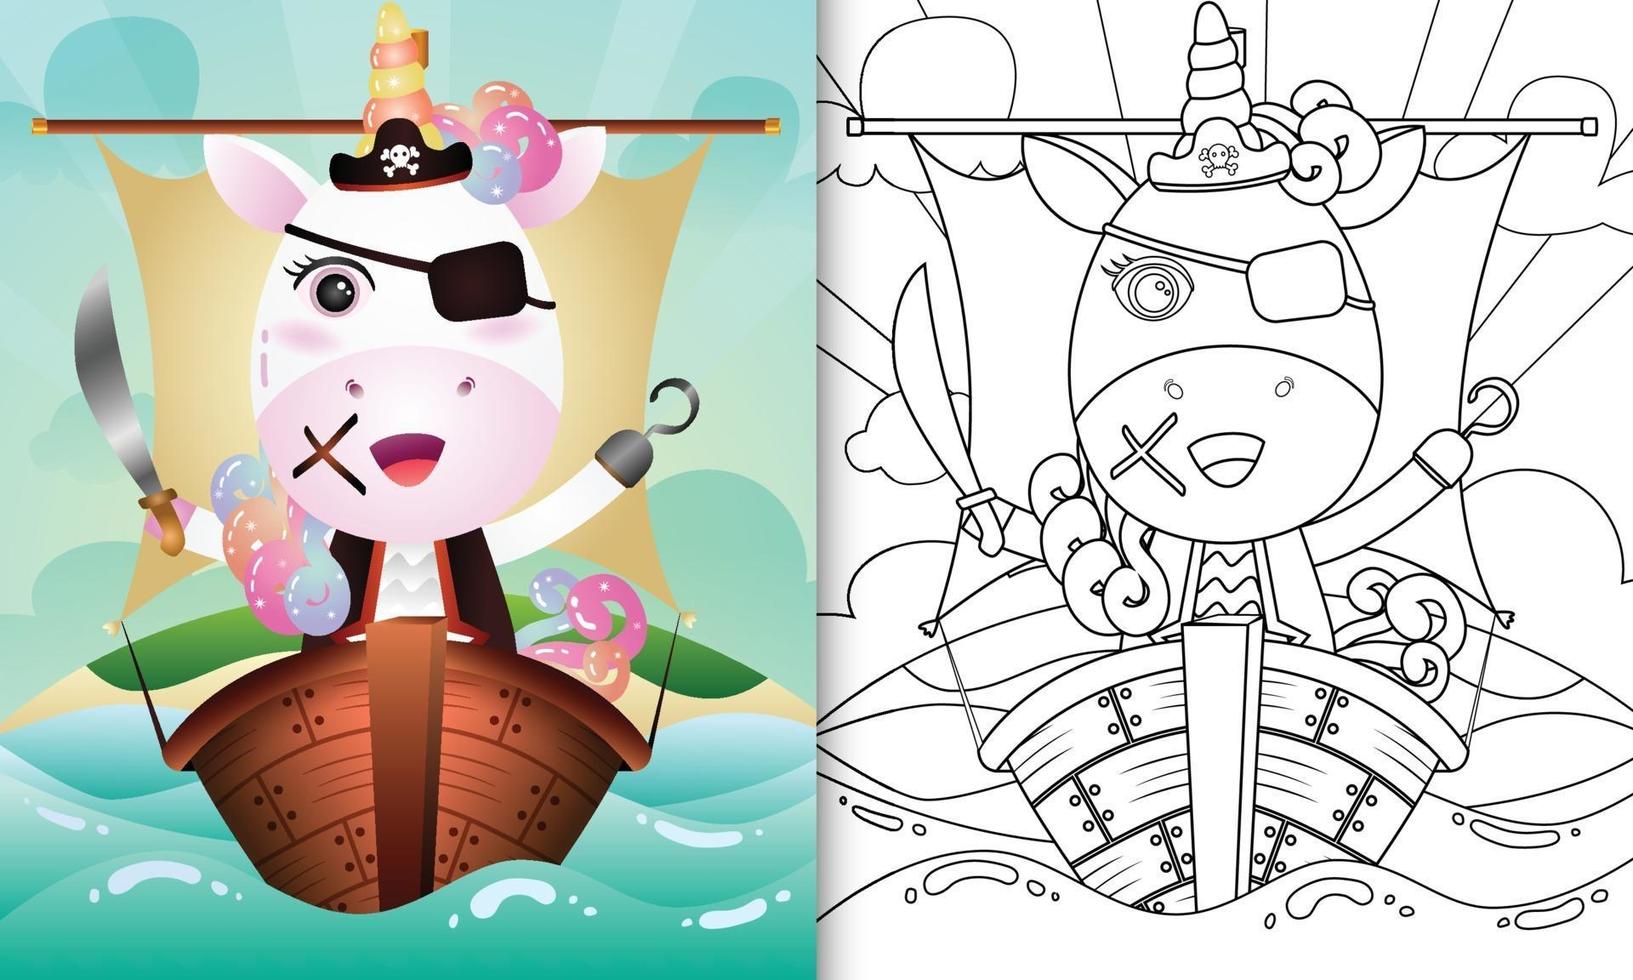 kleurboek voor kinderen met een schattige piraat eenhoorn karakter illustratie vector